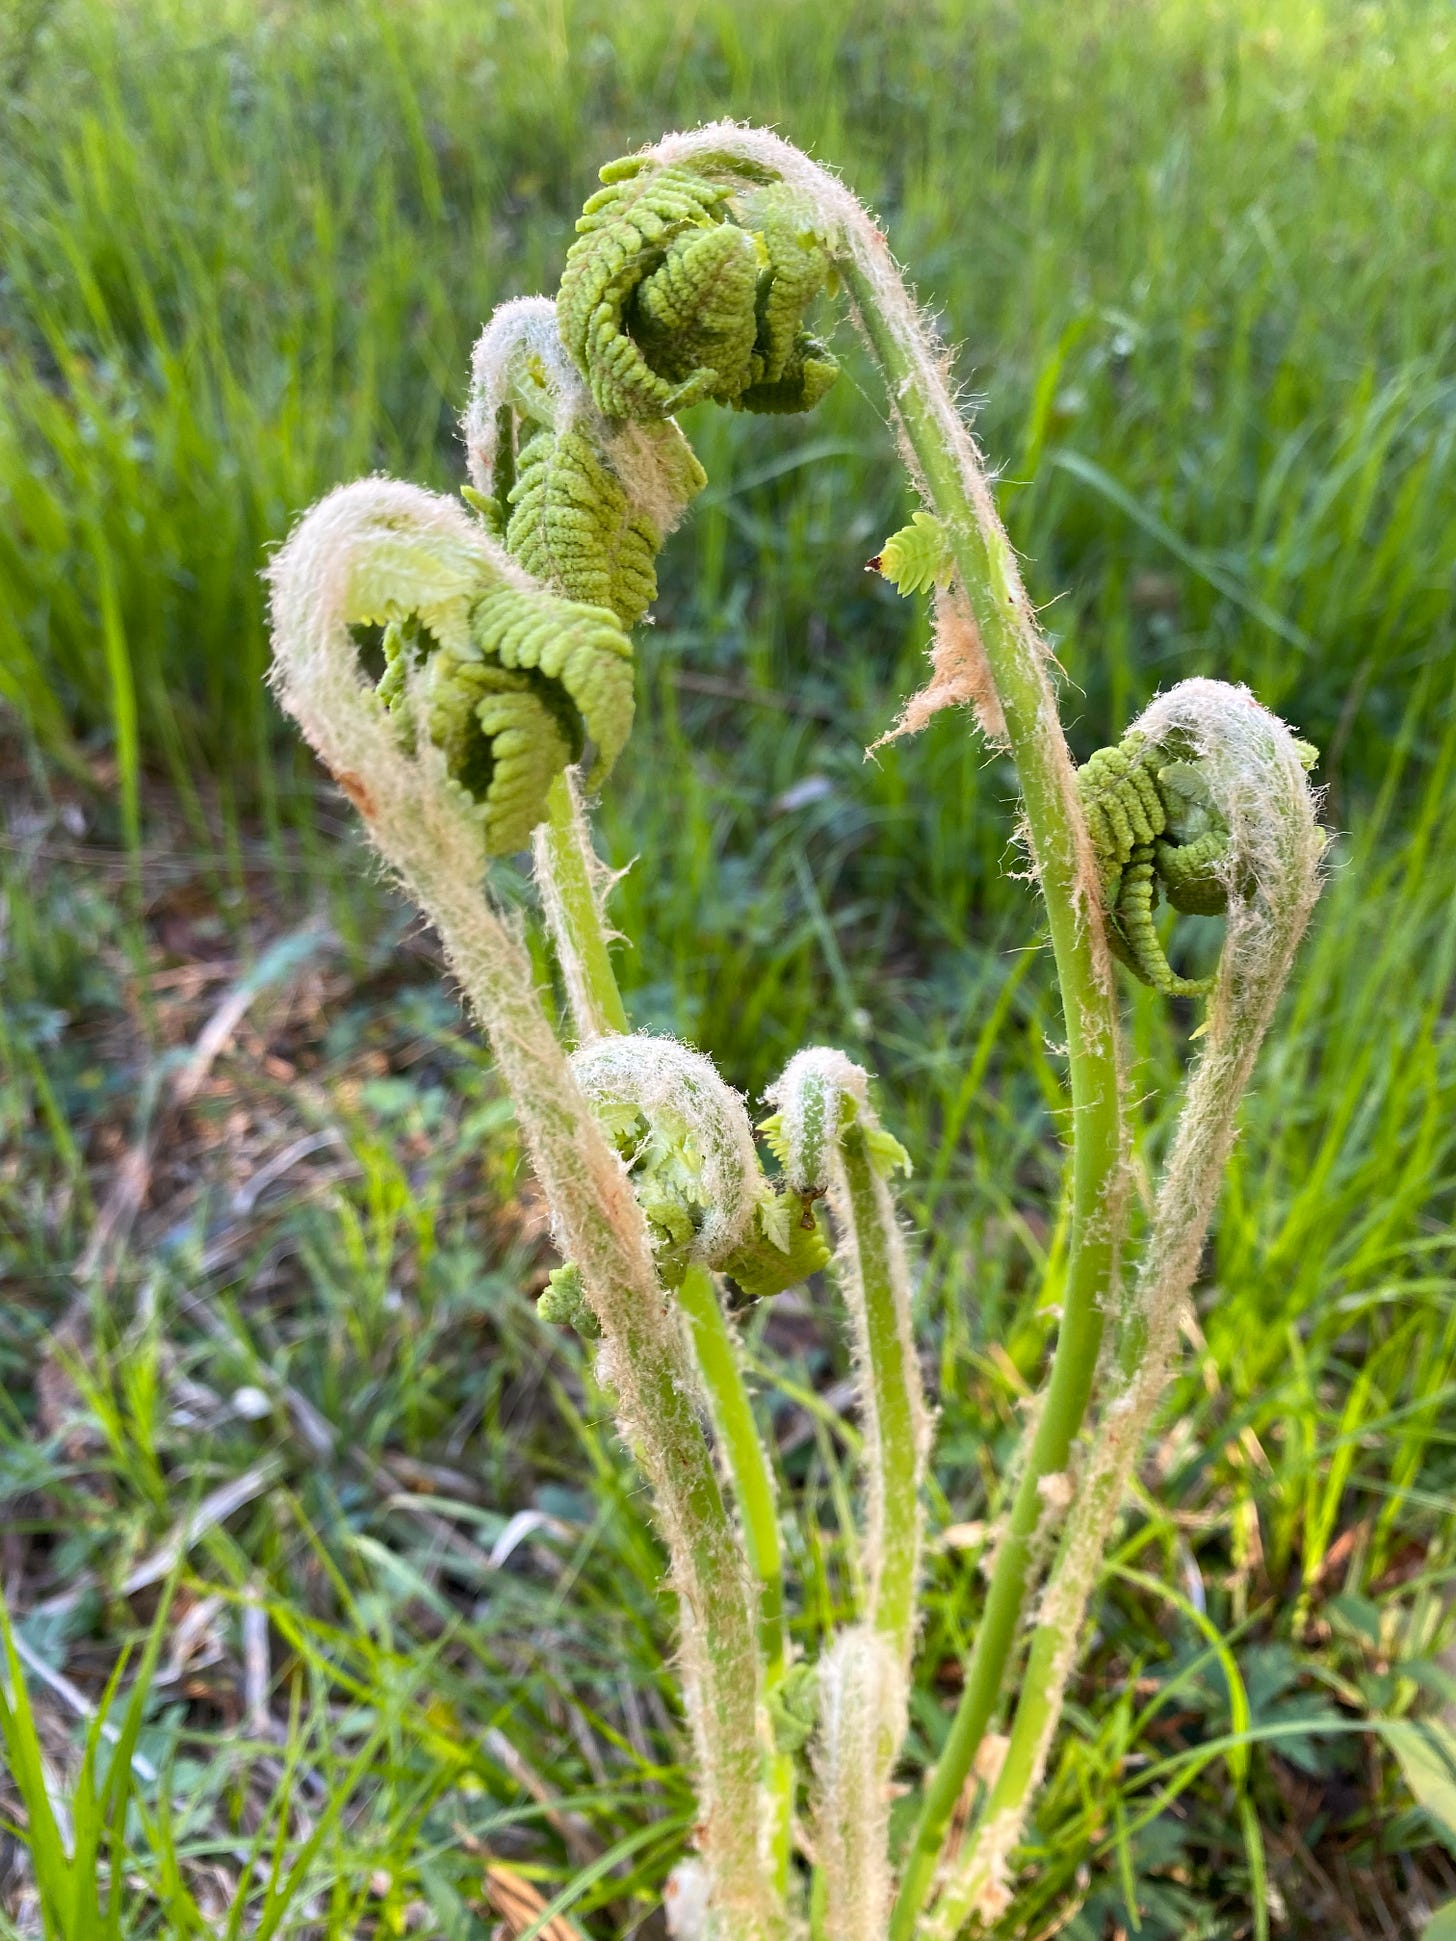 The fronds of a fiddlehead fern unfurling in a field of sunlit grass.